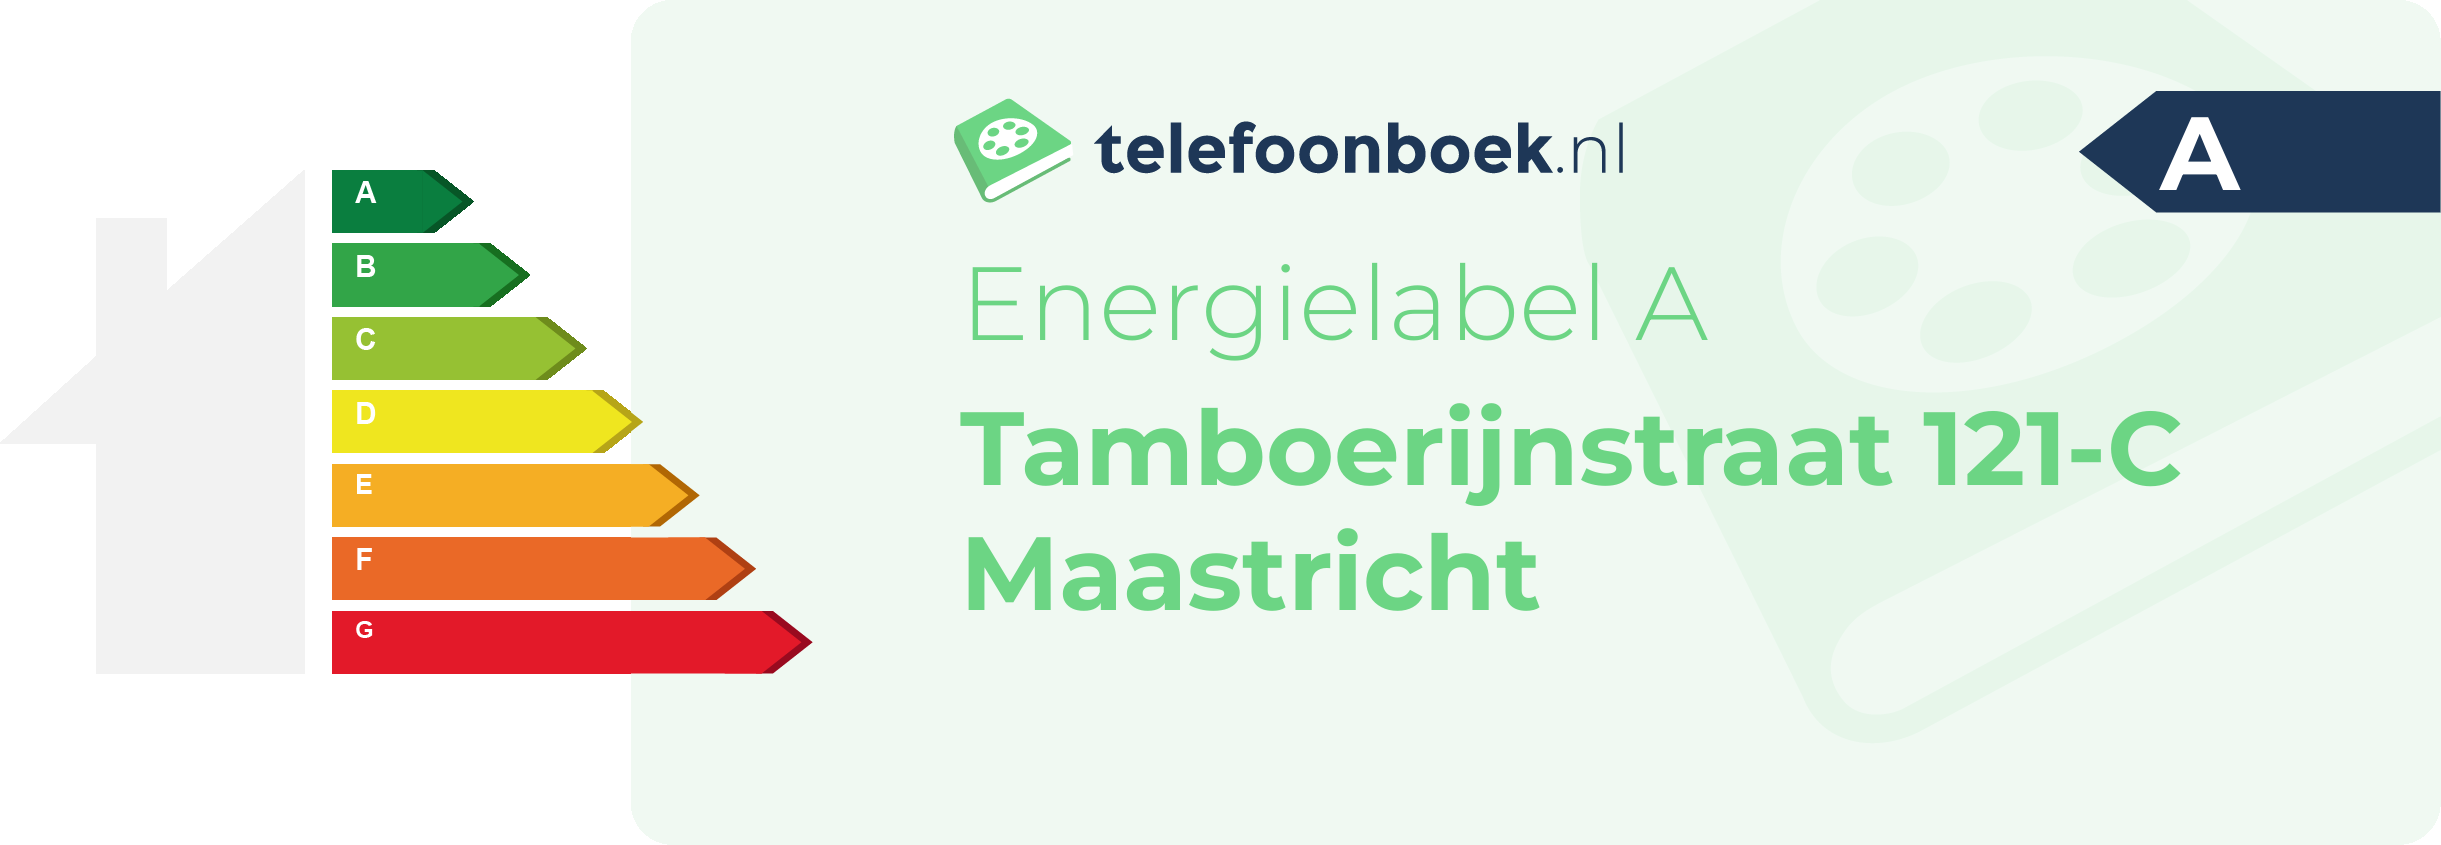 Energielabel Tamboerijnstraat 121-C Maastricht